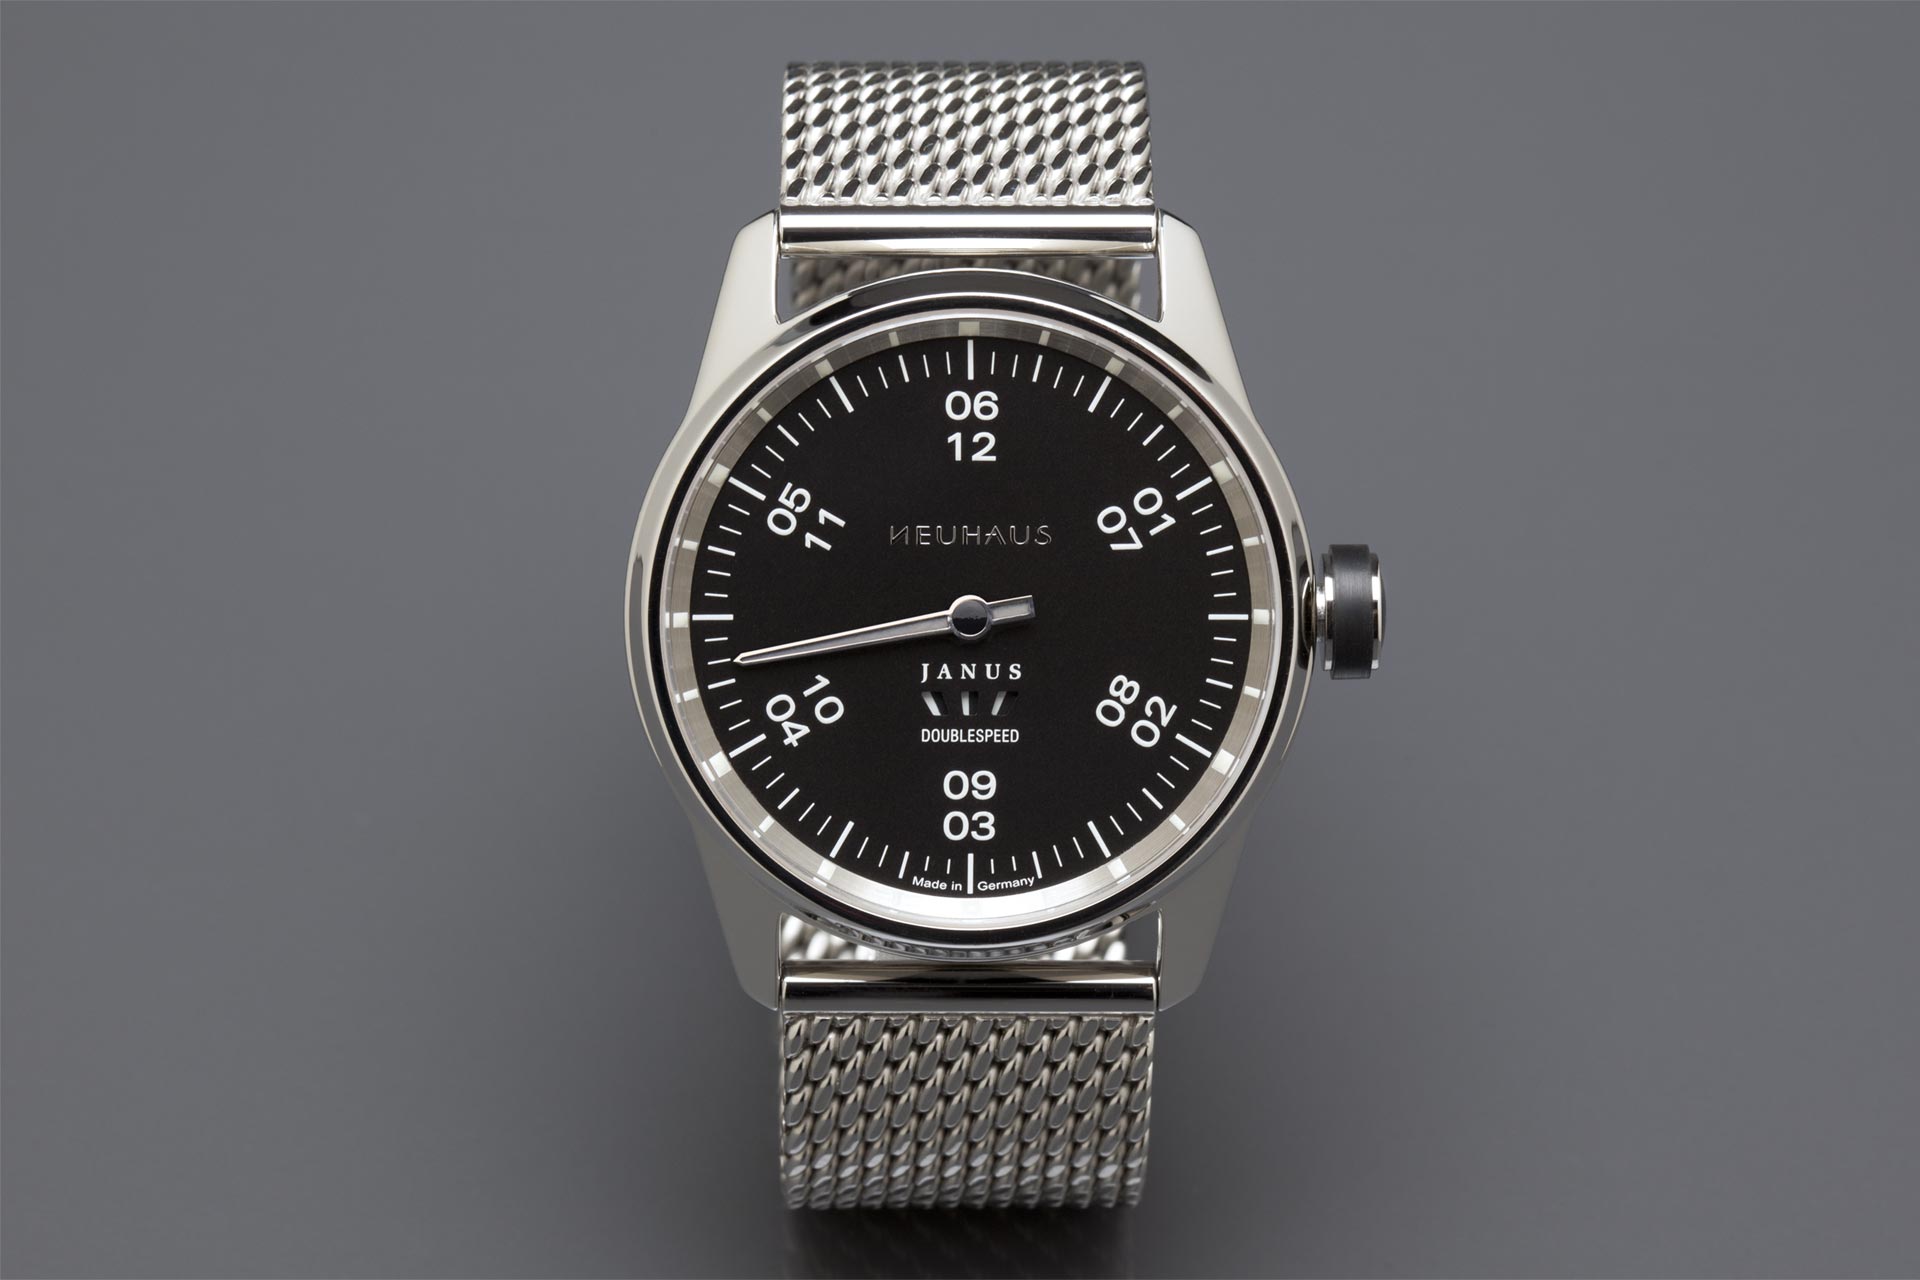 Einzeigeruhr von NEUHAUS Timepieces, Modell JANUS DoubleSpeed, frontal